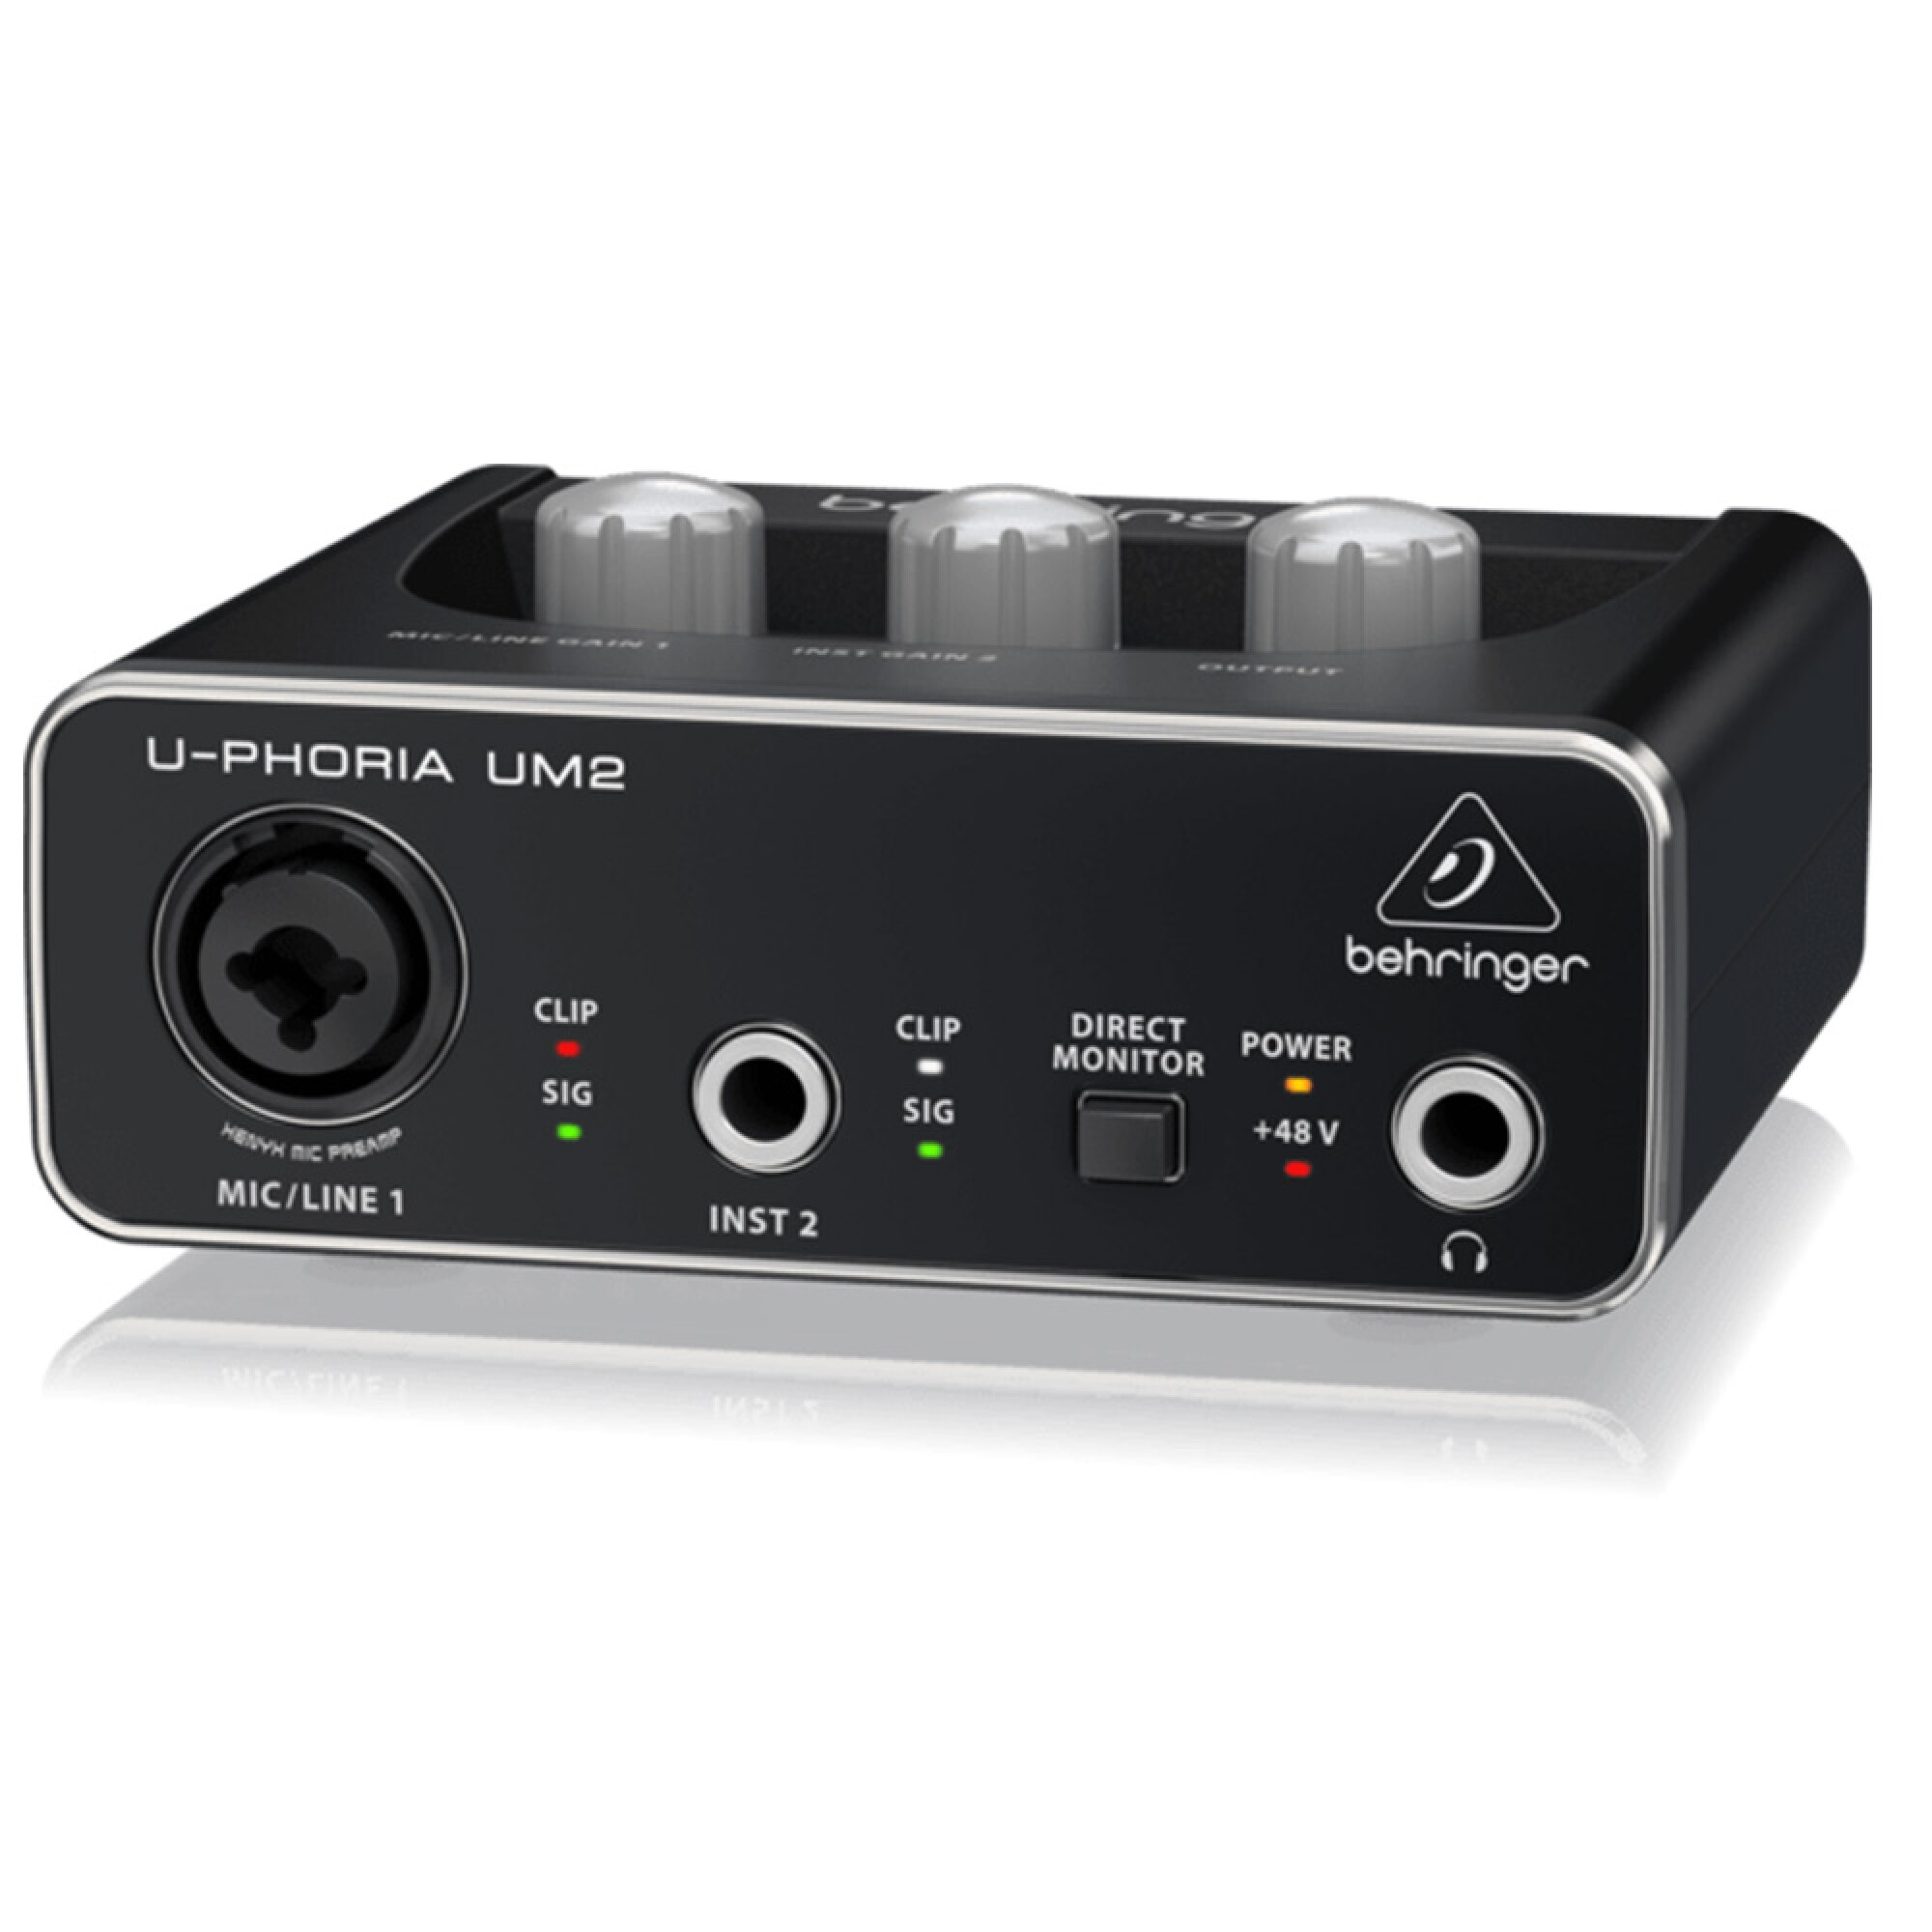 UCA202 BEHRINGER INTERFAZ AUDIO USB - Amexco